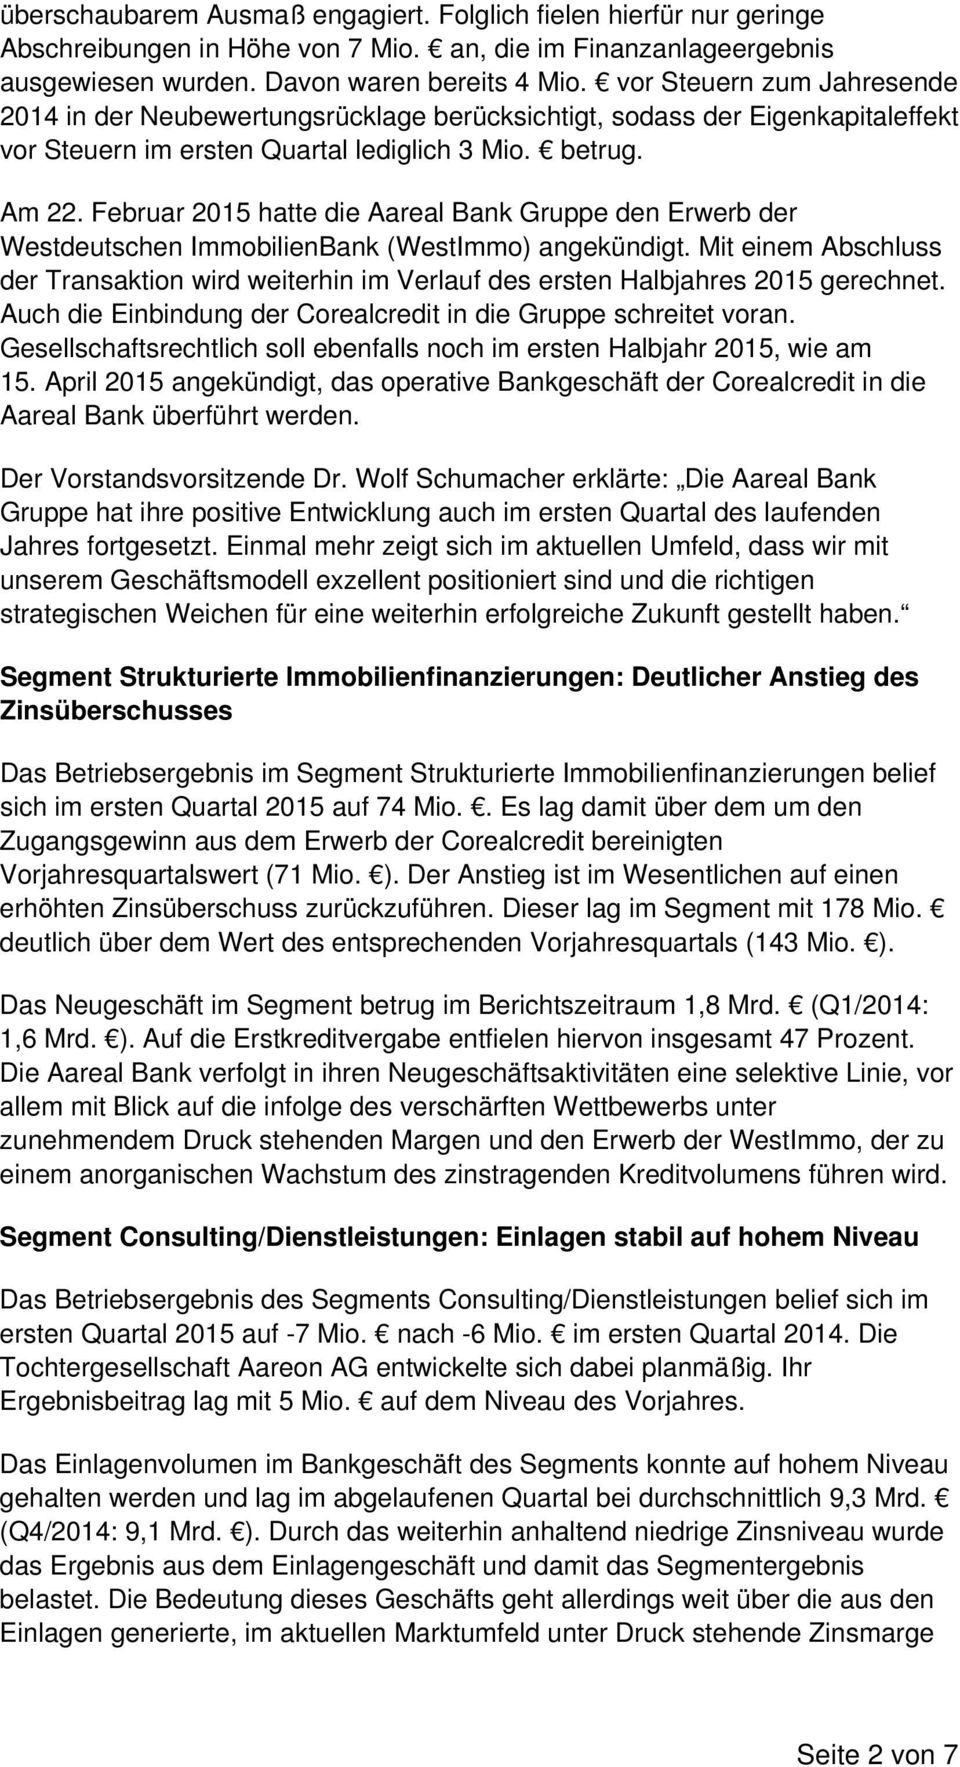 Februar 2015 hatte die Aareal Bank Gruppe den Erwerb der Westdeutschen ImmobilienBank (WestImmo) angekündigt.